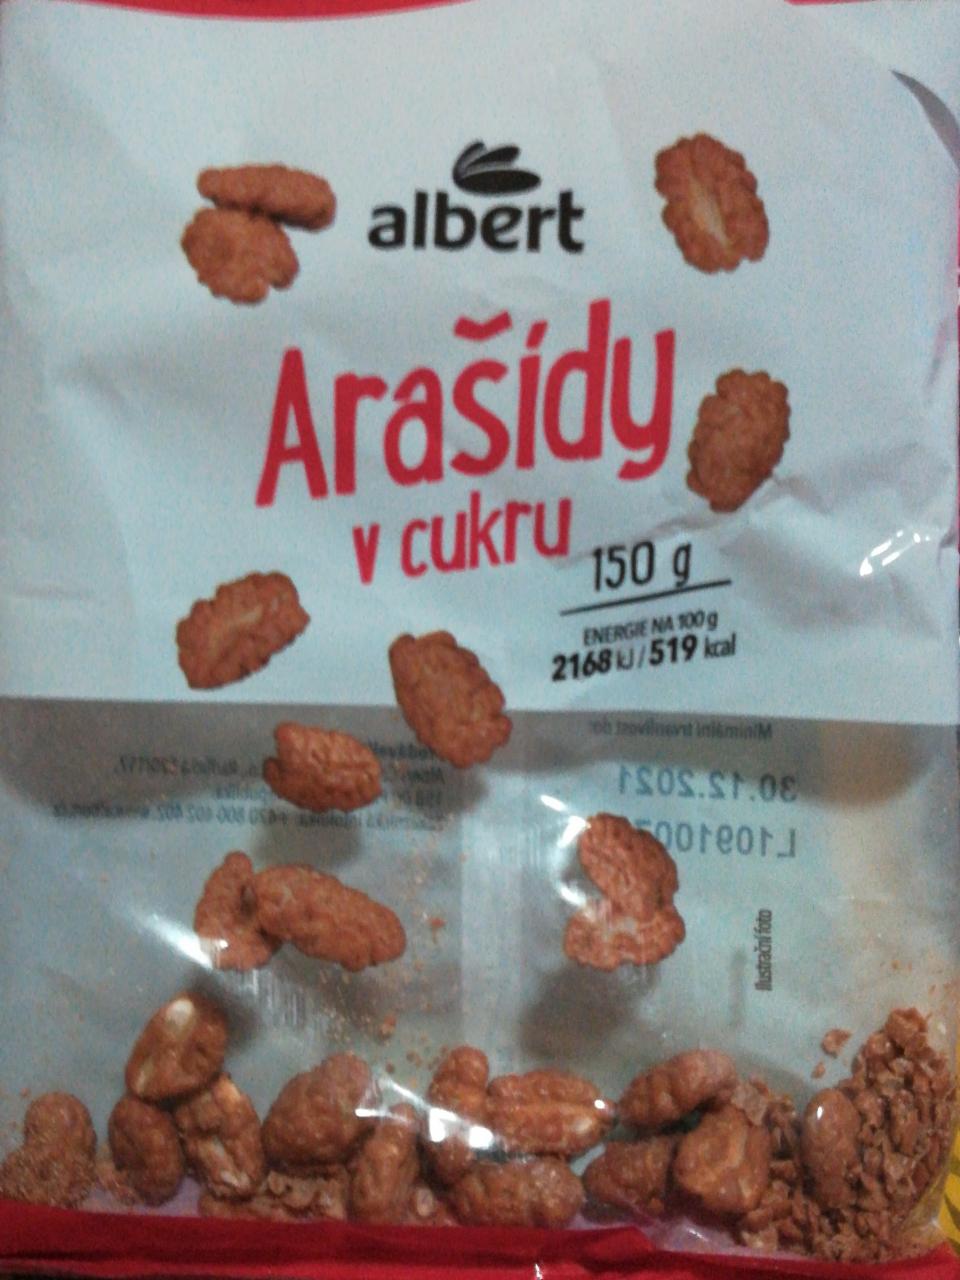 Fotografie - arašídy v cukru Albert